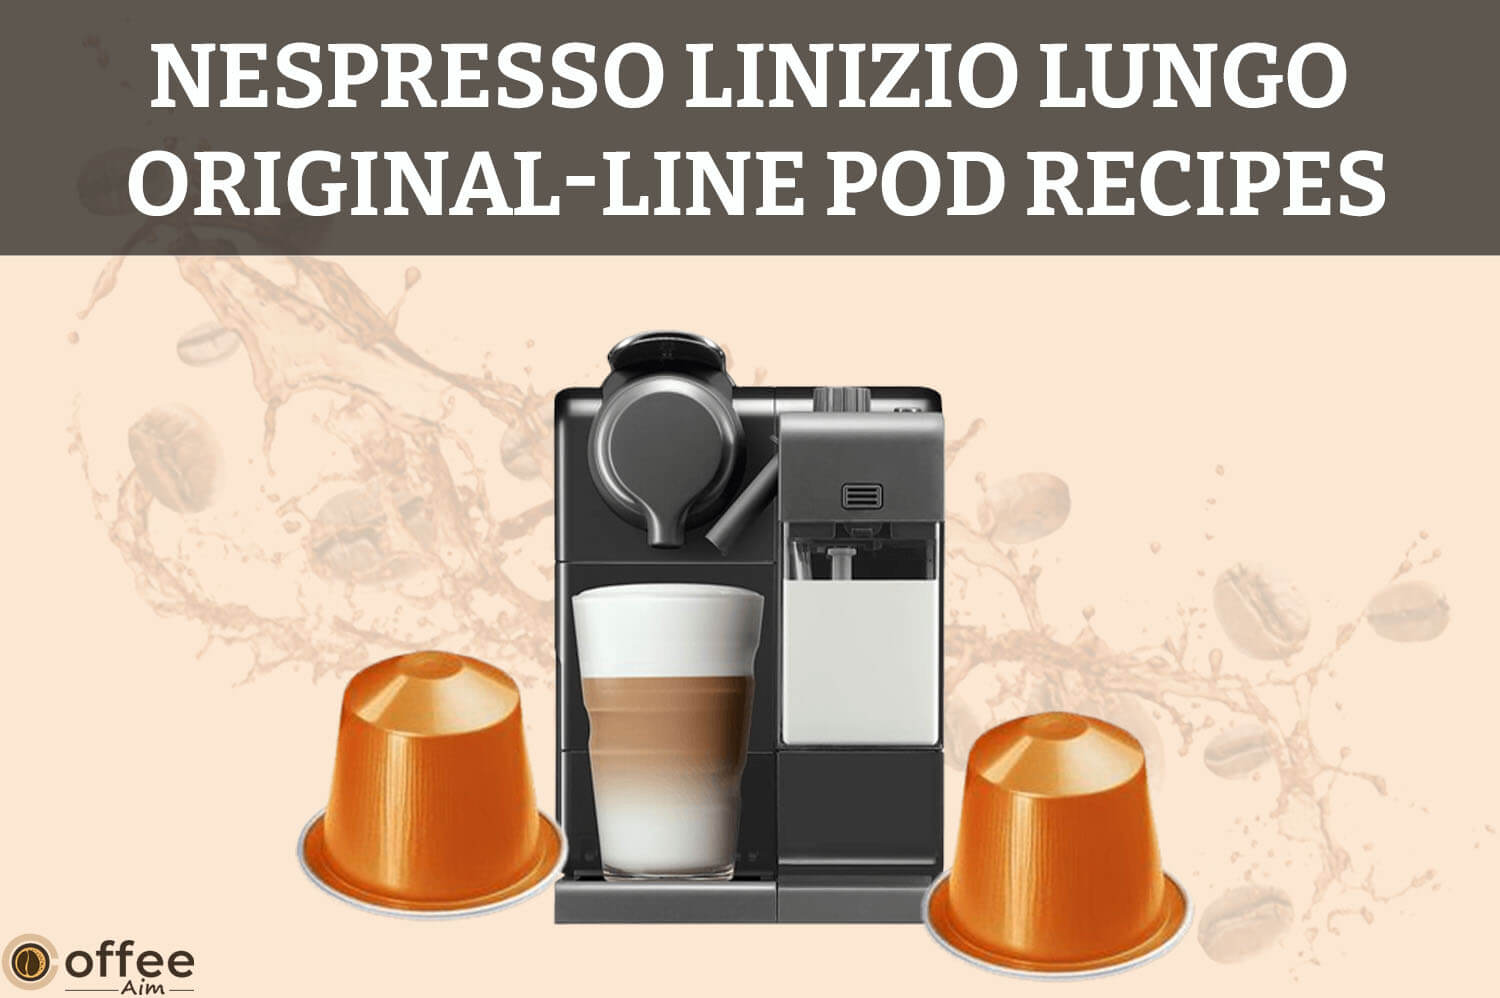 Featured image for the article "Nespresso Linizio Lungo Original-Line Pod Recipes"